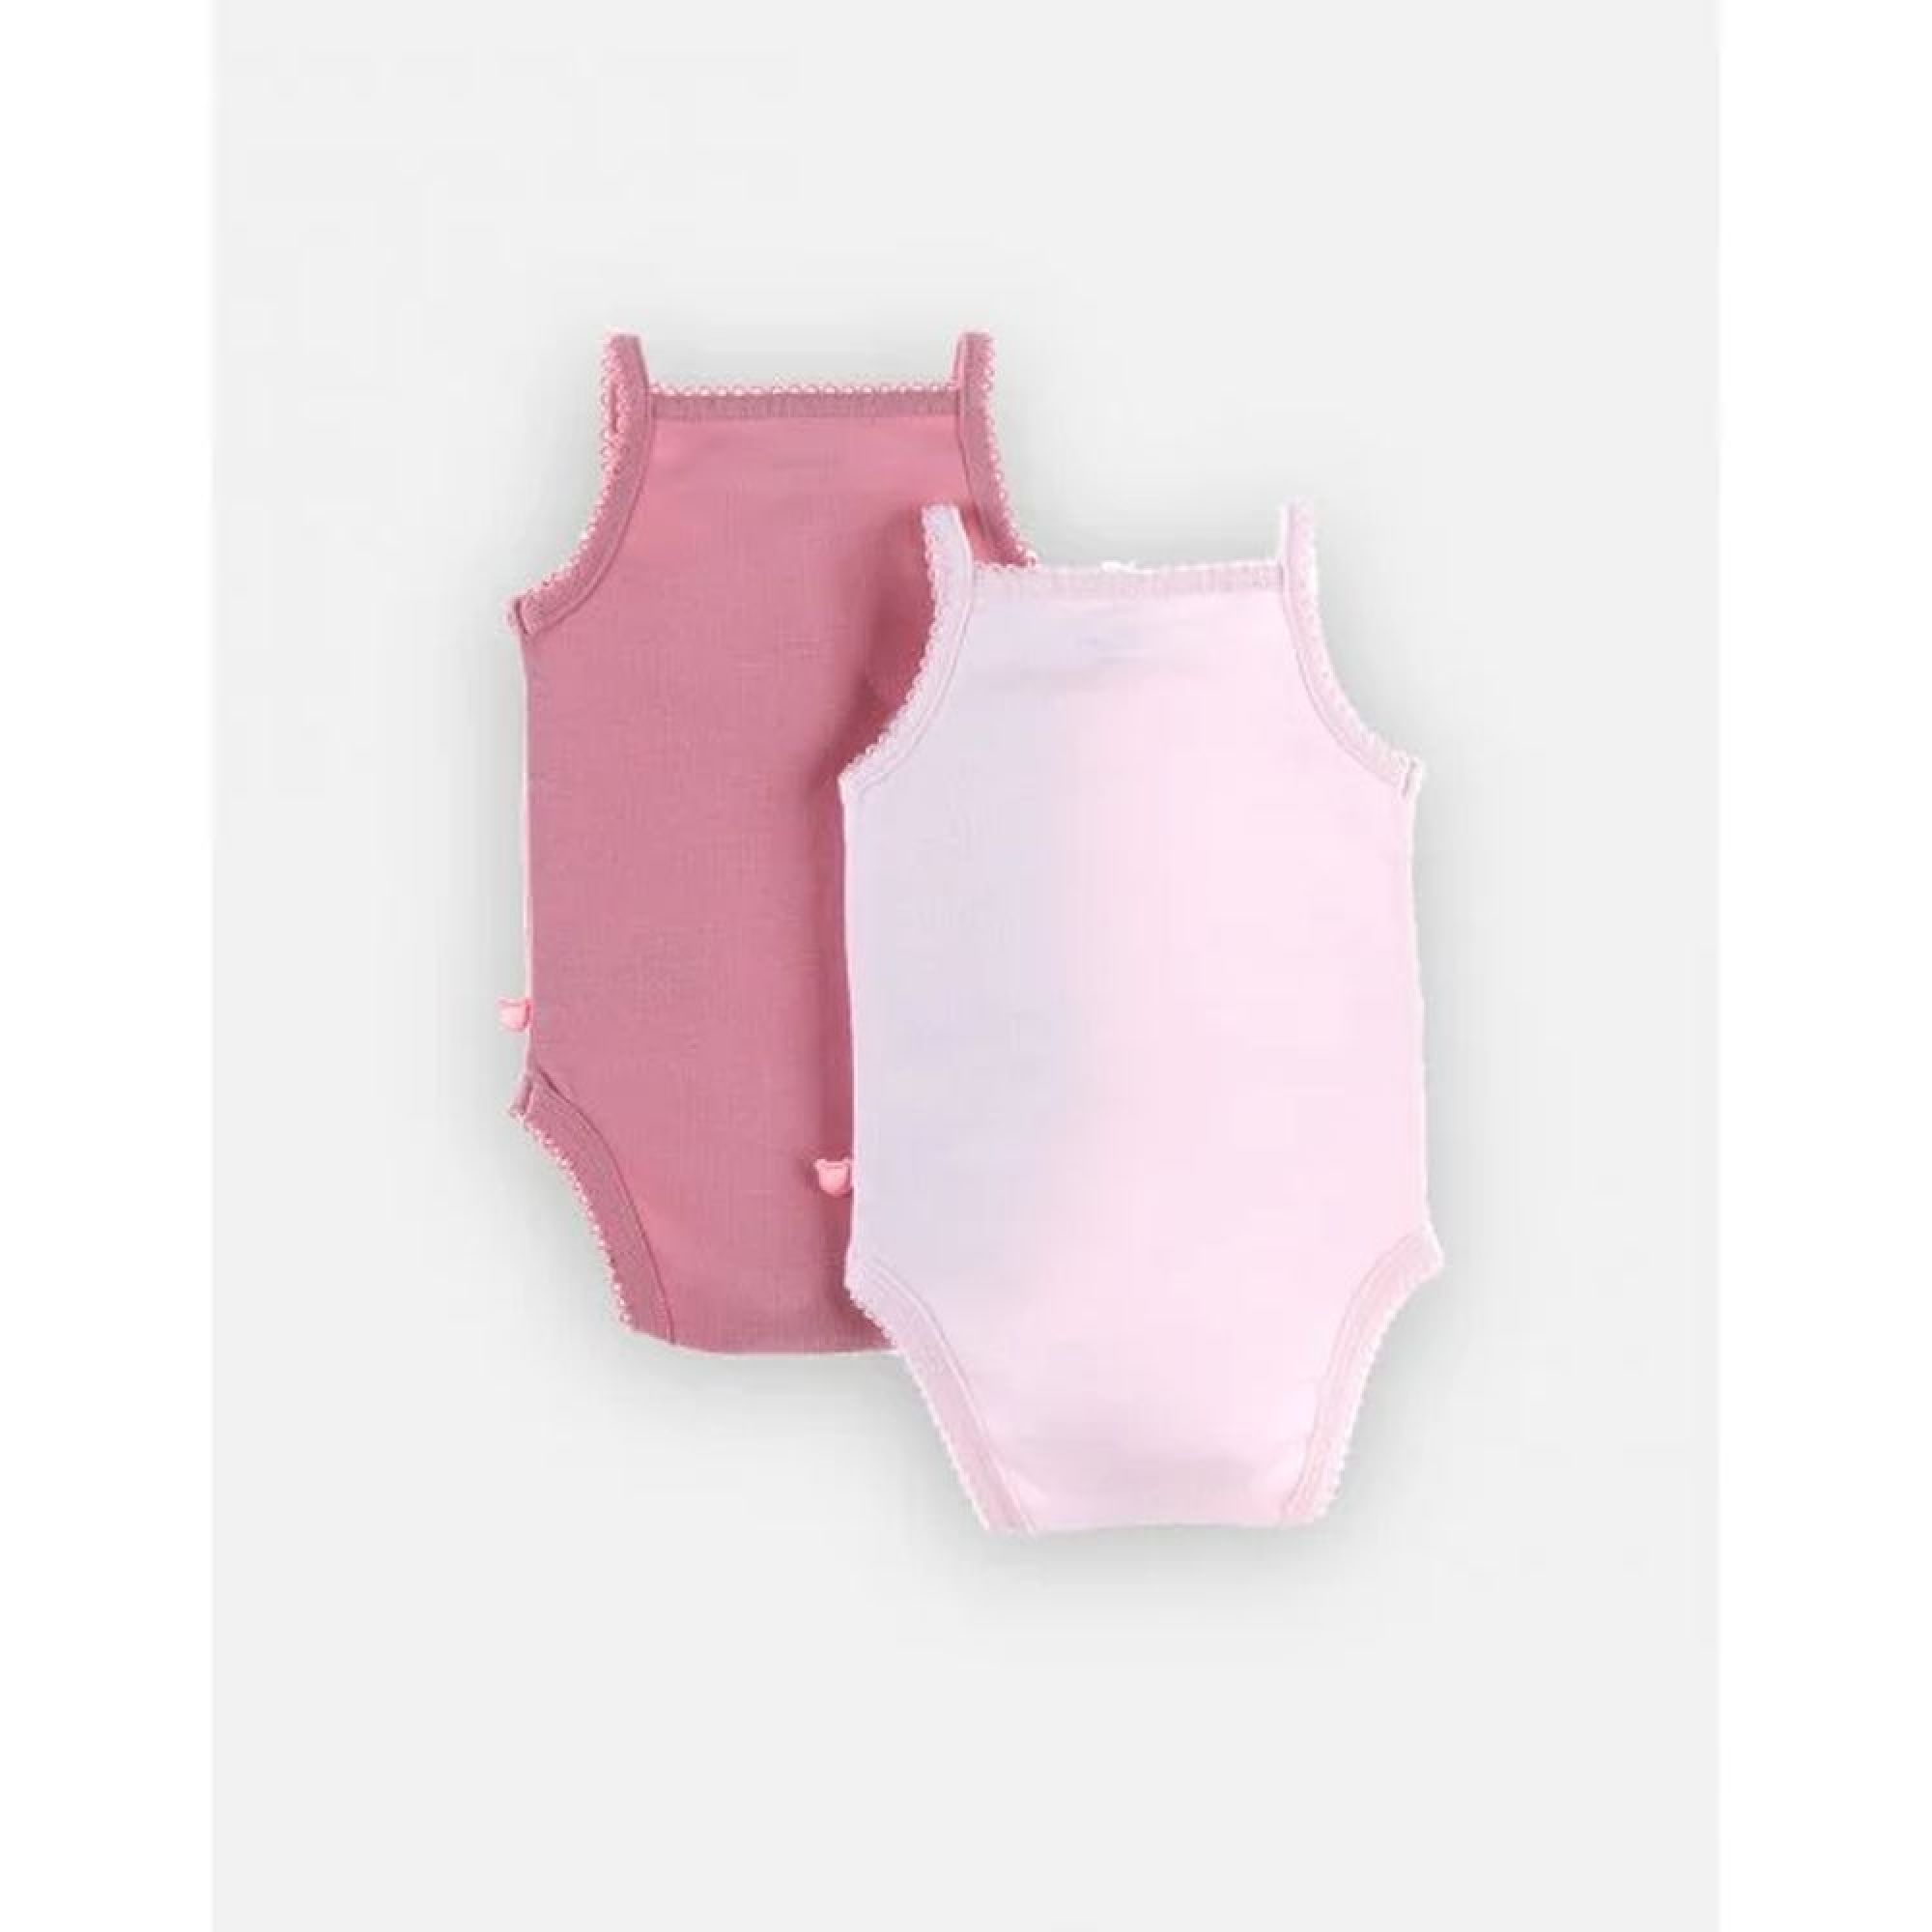 Body bébé fille à bretelles en jersey 100% coton rose > Babystock